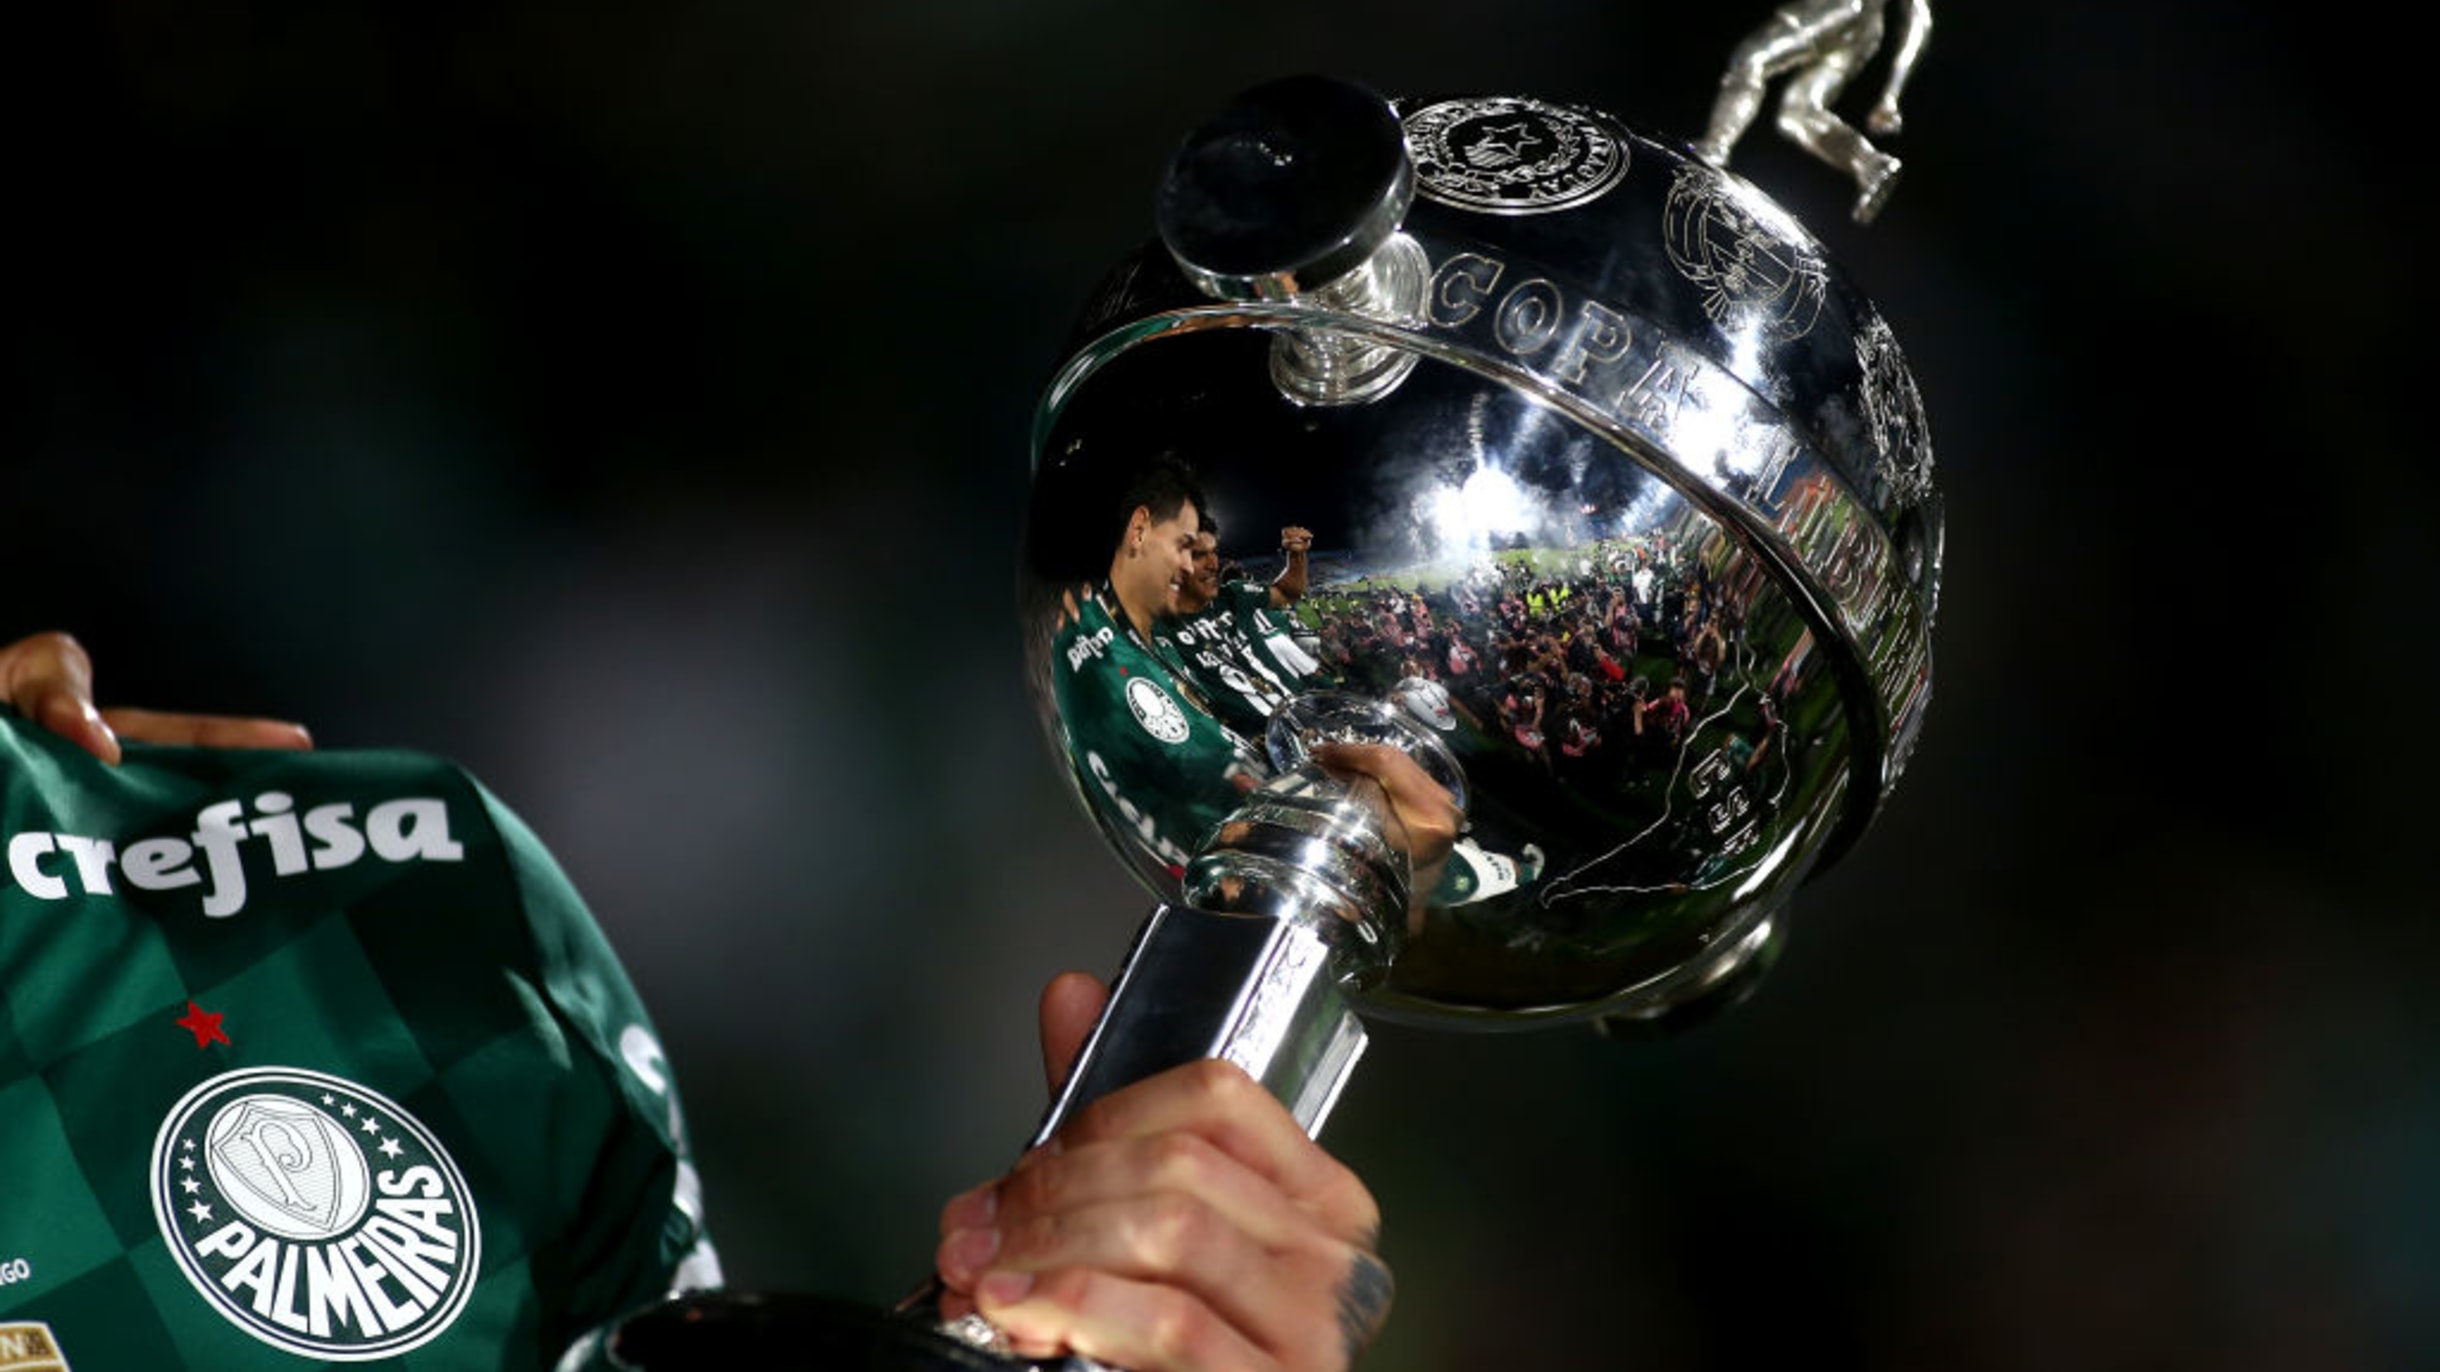 Copa Libertadores 2023: Os jogos e resultados da 5ª rodada da fase